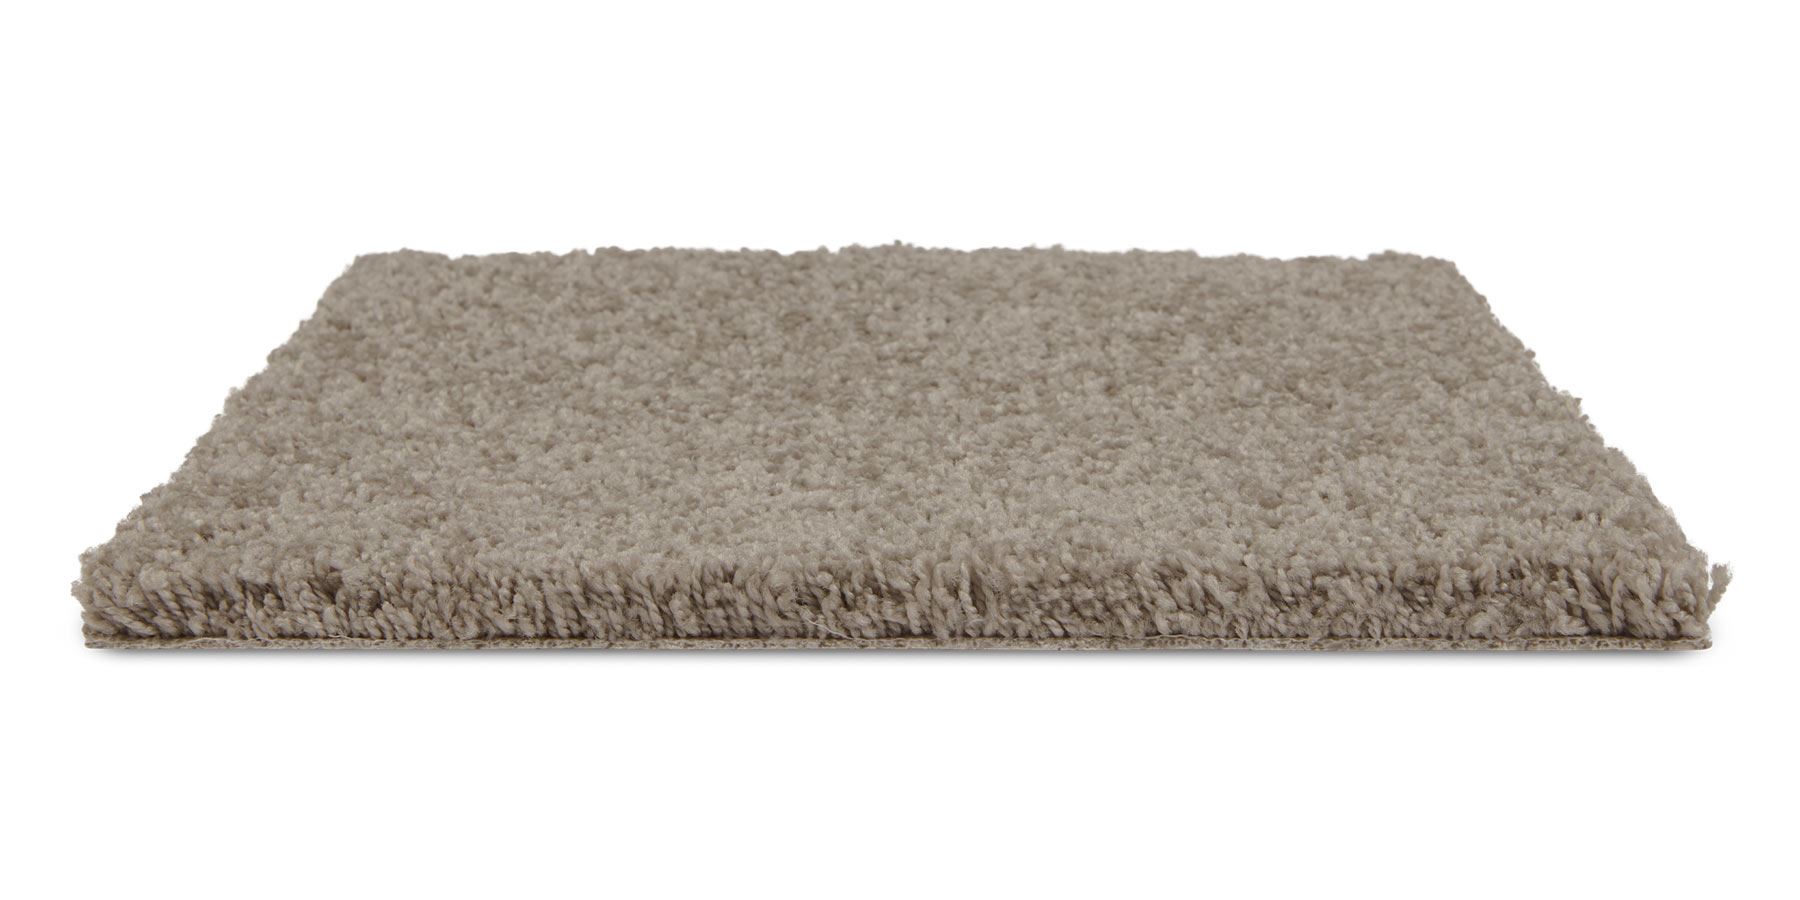 Allure Plush Carpet